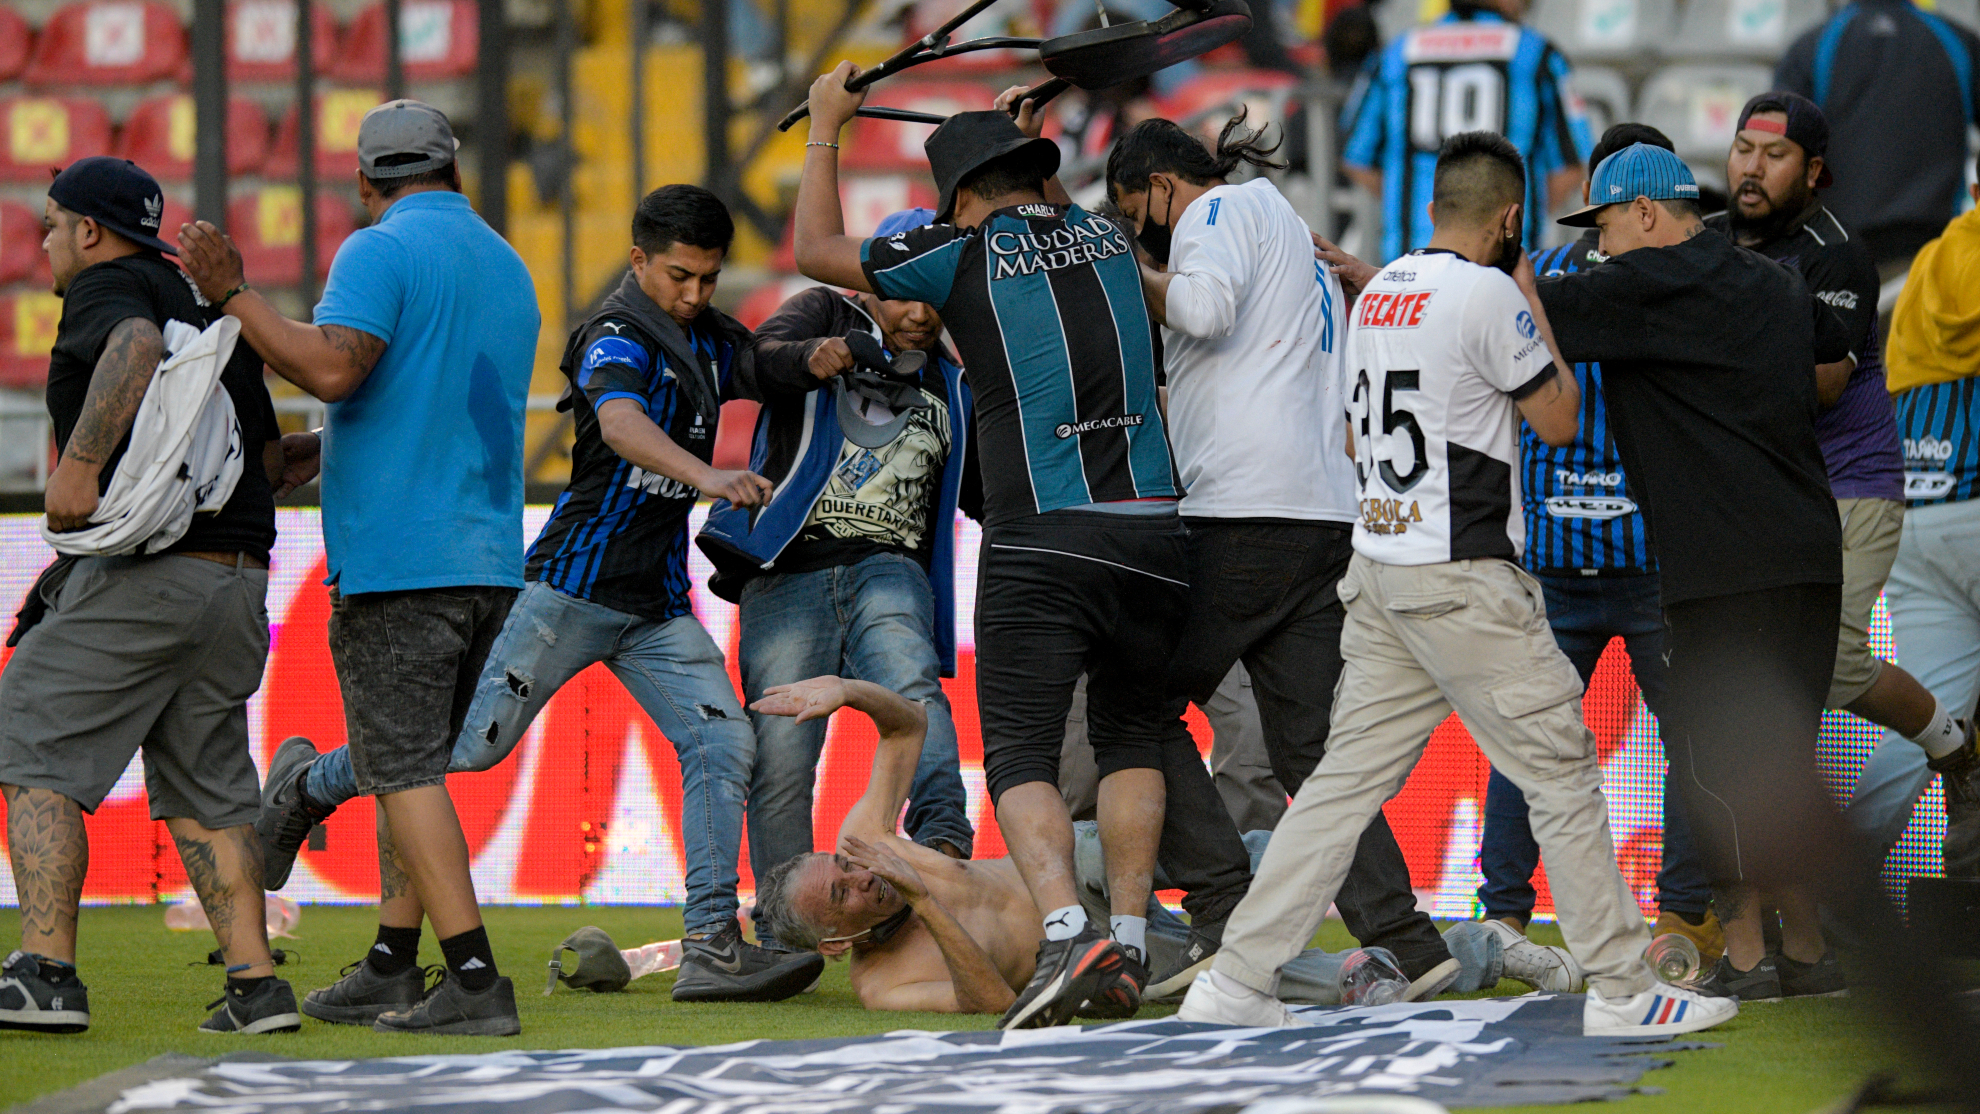 Unos ultras del Querétaro patean a uno del Atlas en pleno césped.